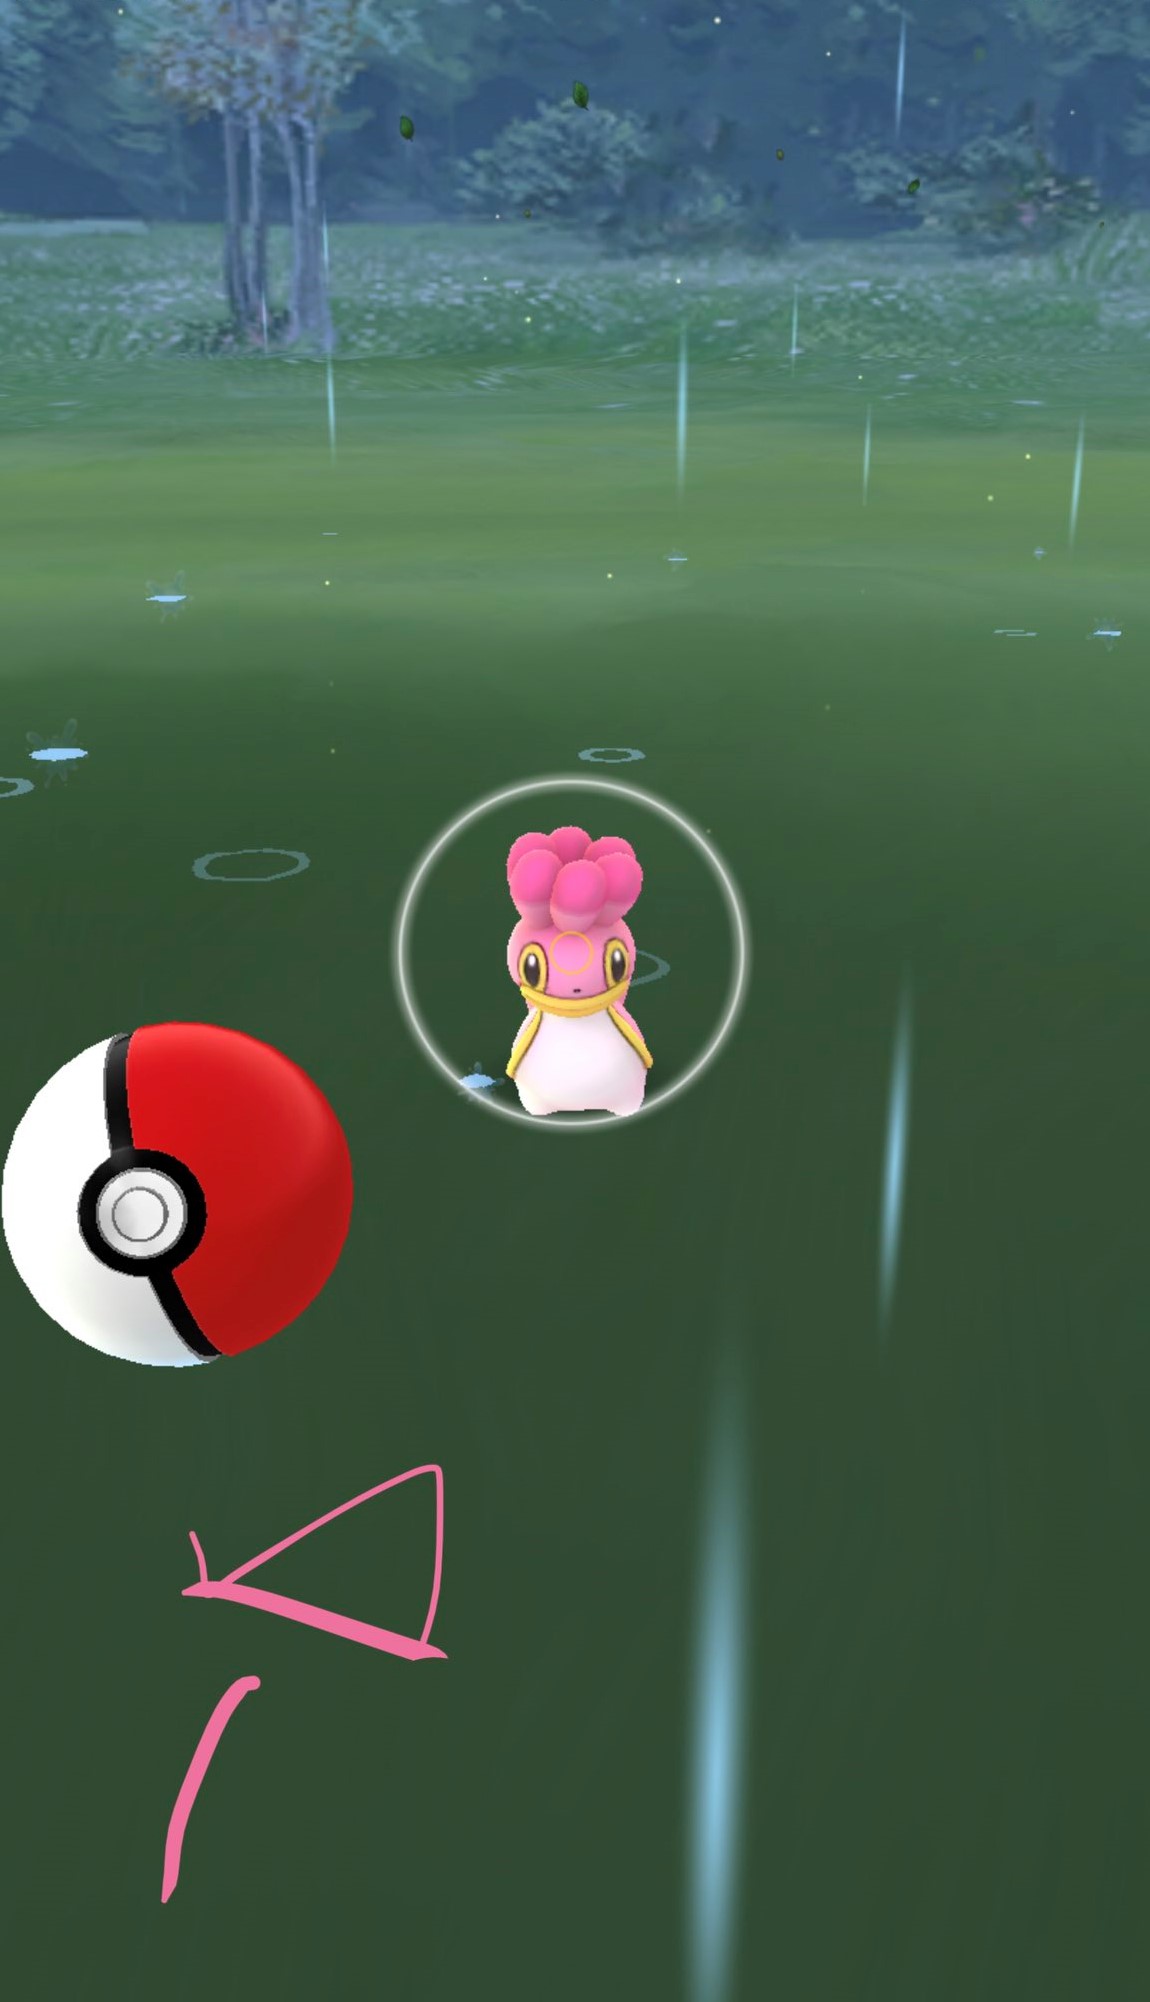 Pokémon GO está zoando o sistema de bola curva dos jogadores